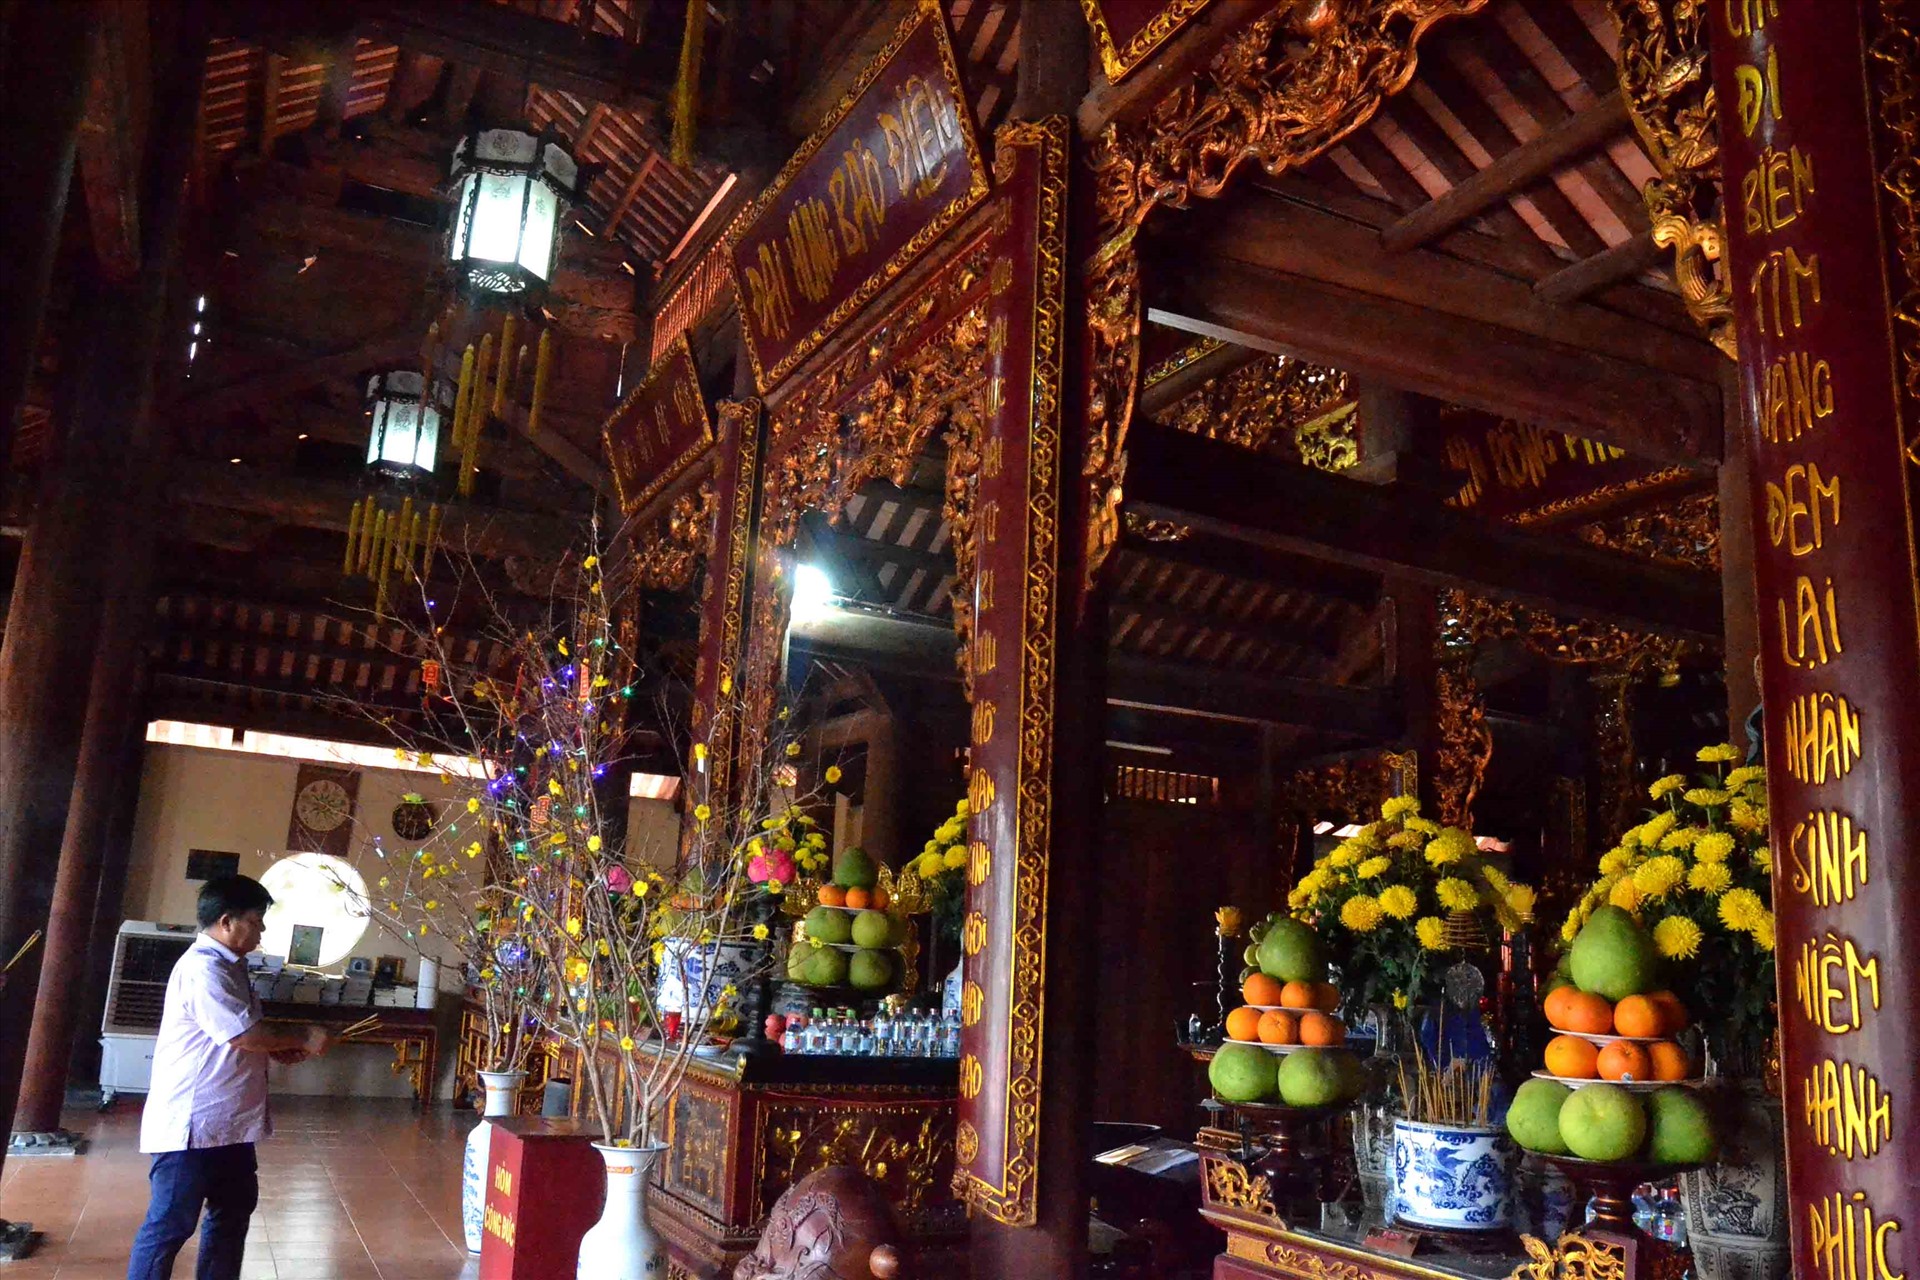 Đặc biệt bên trong chùa Vân Sơn ở Côn Đảo, lối bày trí, thờ tự càng thuần Việt, nhất là các liễng, đối đều được thể hiện bằng chữ quốc ngữ. Ảnh: Lục Tùng